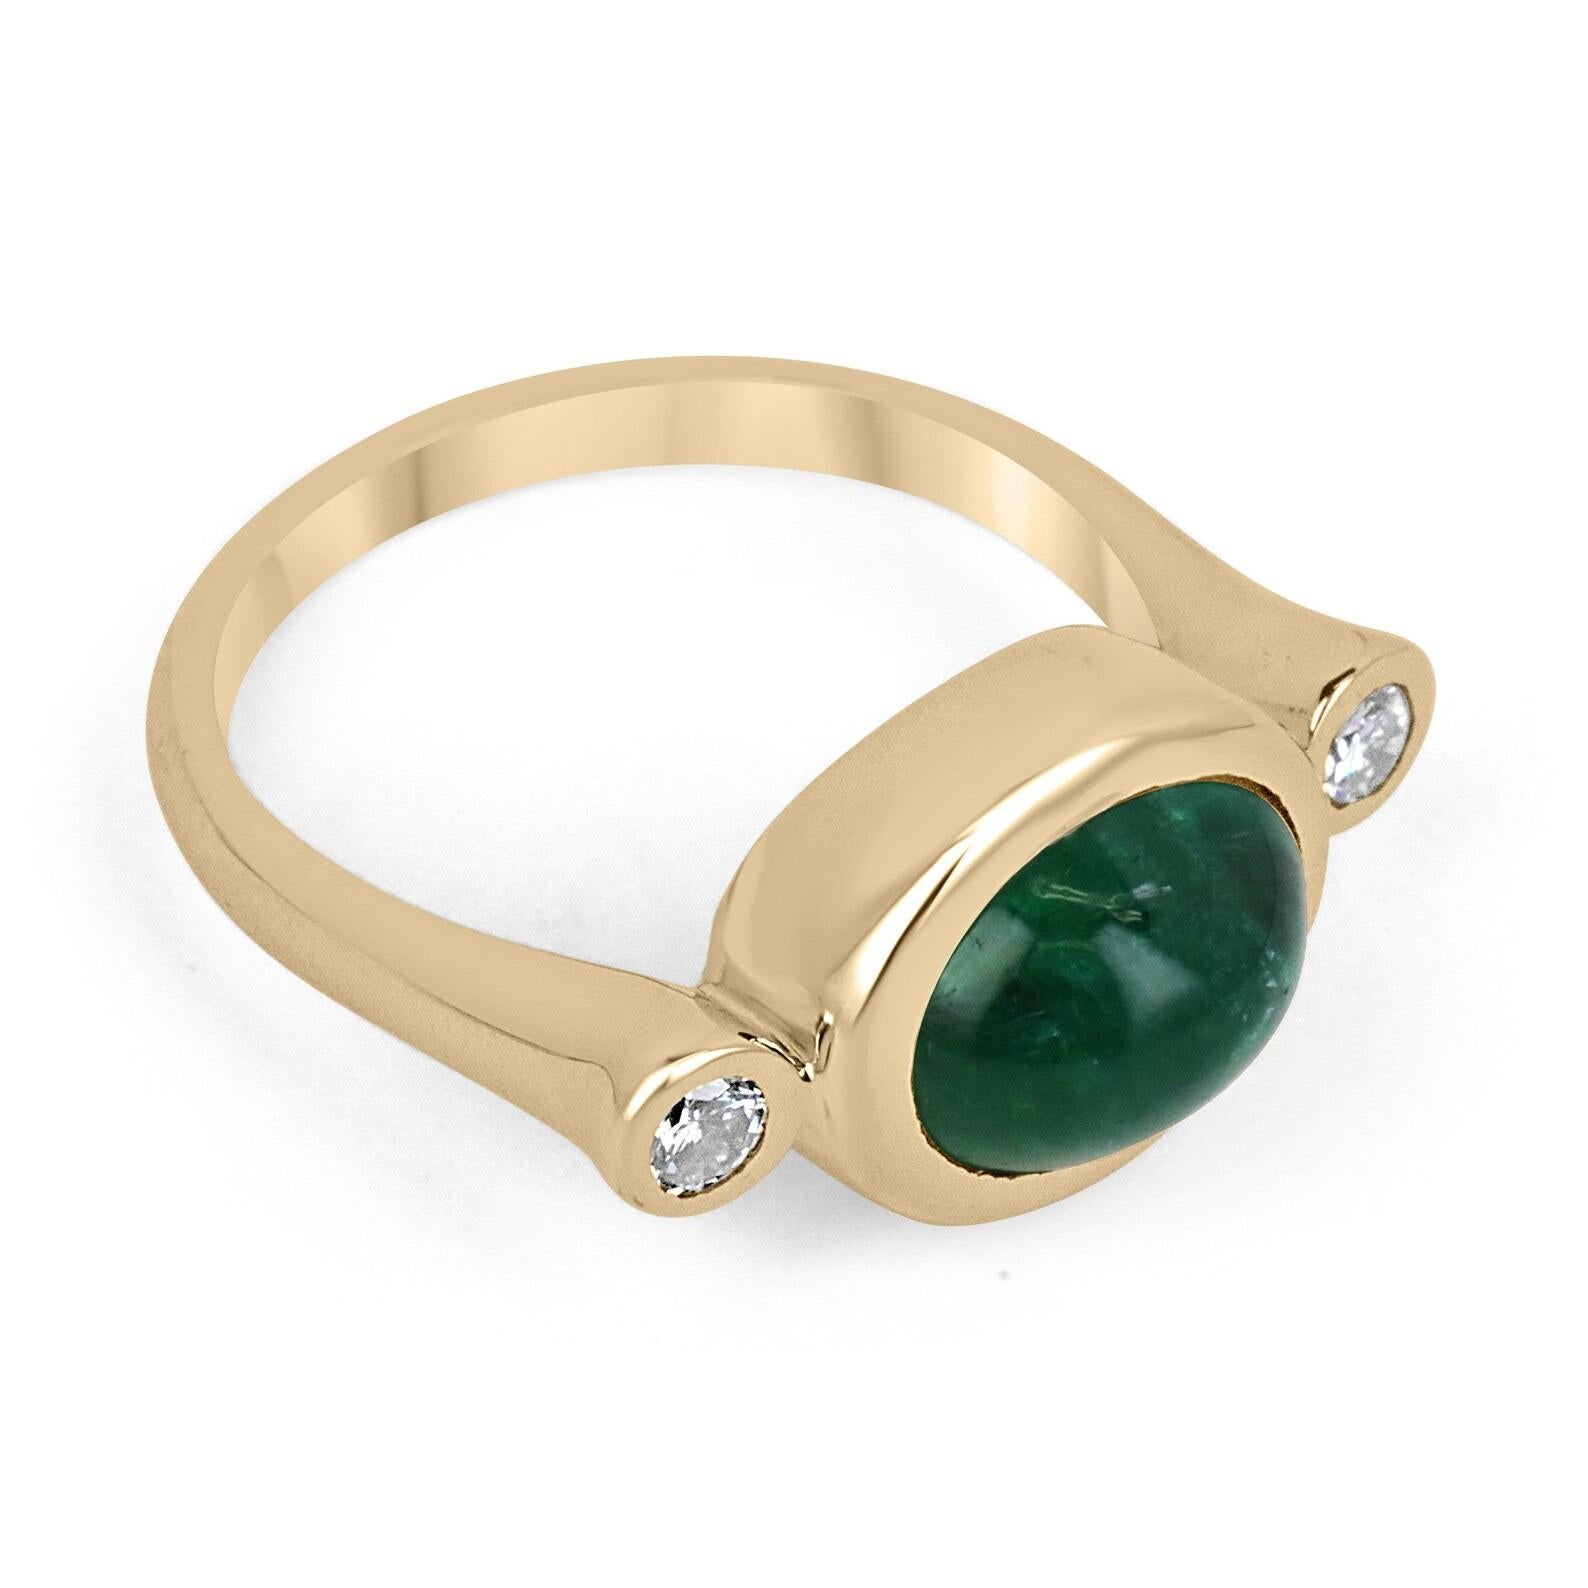 Ein prächtiger Dreisteinring mit Smaragd-Cabochon und Diamant-Akzent. Dieses bemerkenswerte Stück zeichnet sich durch einen atemberaubenden, hochwertigen, dunkel smaragdgrünen Cabochon-Smaragd aus. Oval geschliffen, mit sehr guter Klarheit und